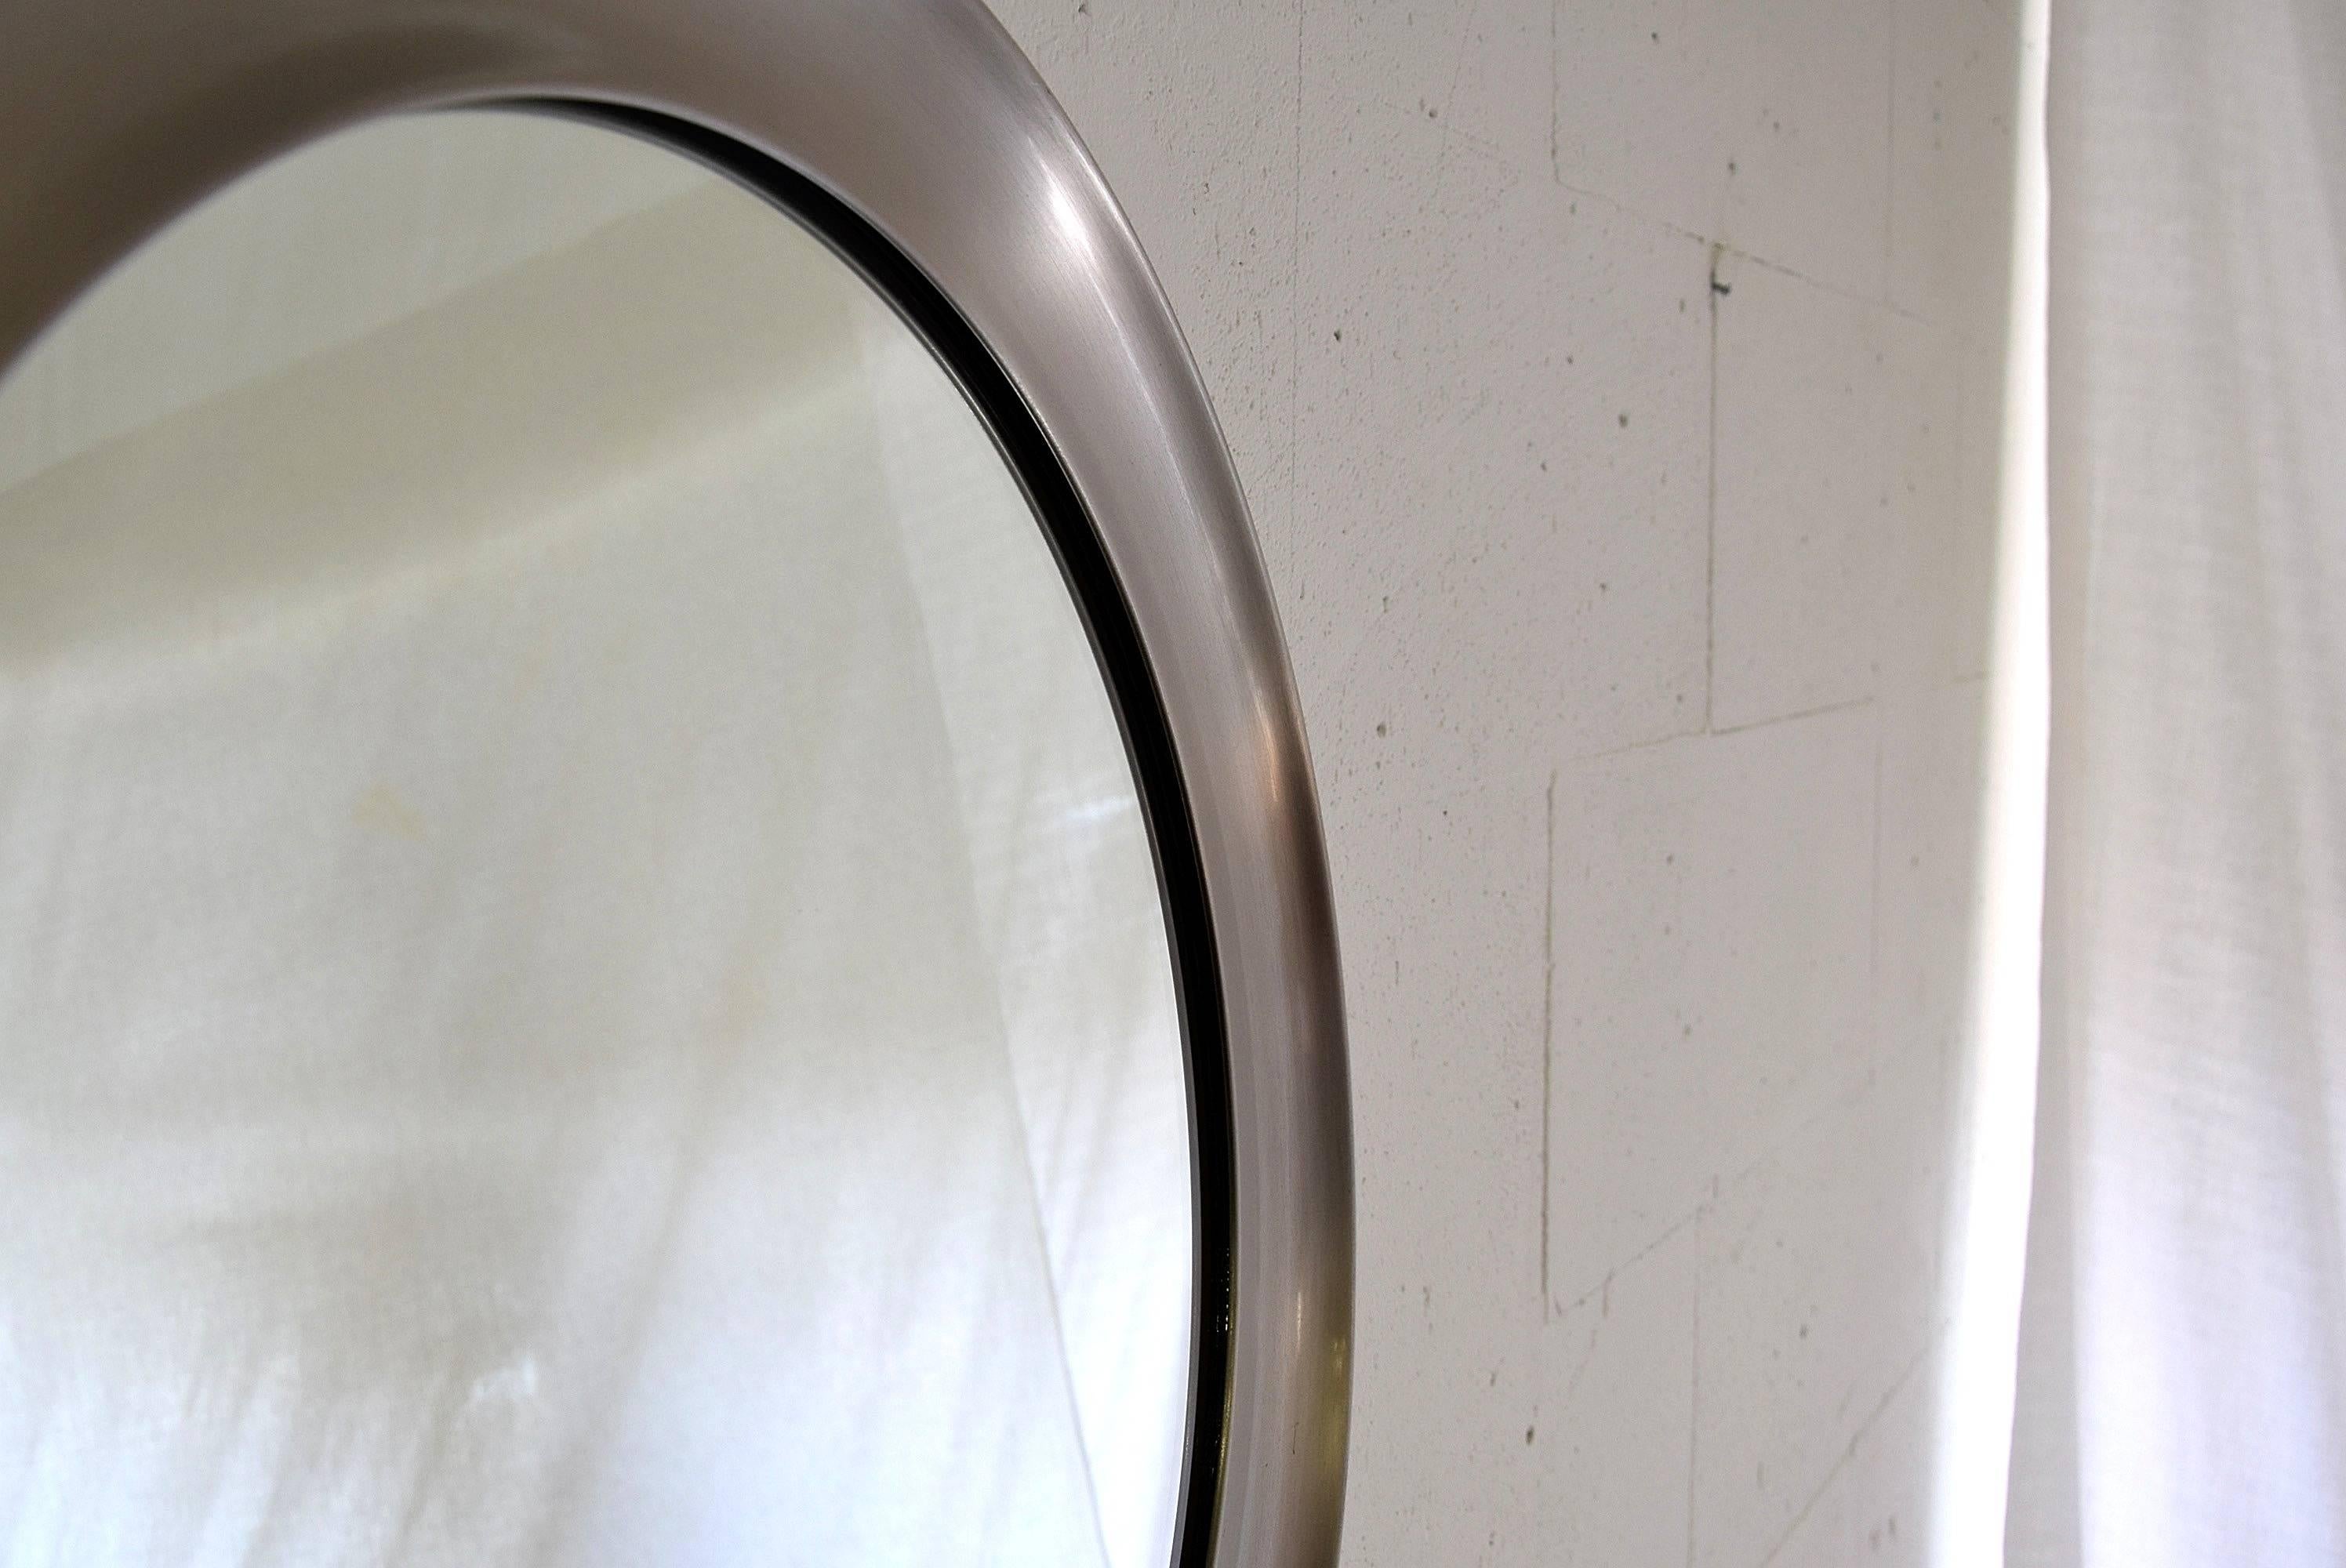 Sehr schöner Spiegel, 1957 von Sergio Mazza für Artemide entworfen. Der Spiegel ist aus gebürstetem Edelstahl gefertigt und befindet sich in einem guten Zustand.
Abmessungen: T 62 x T 4 cm.
Sergio Mazza ist ein italienischer Designer, der 1931 in